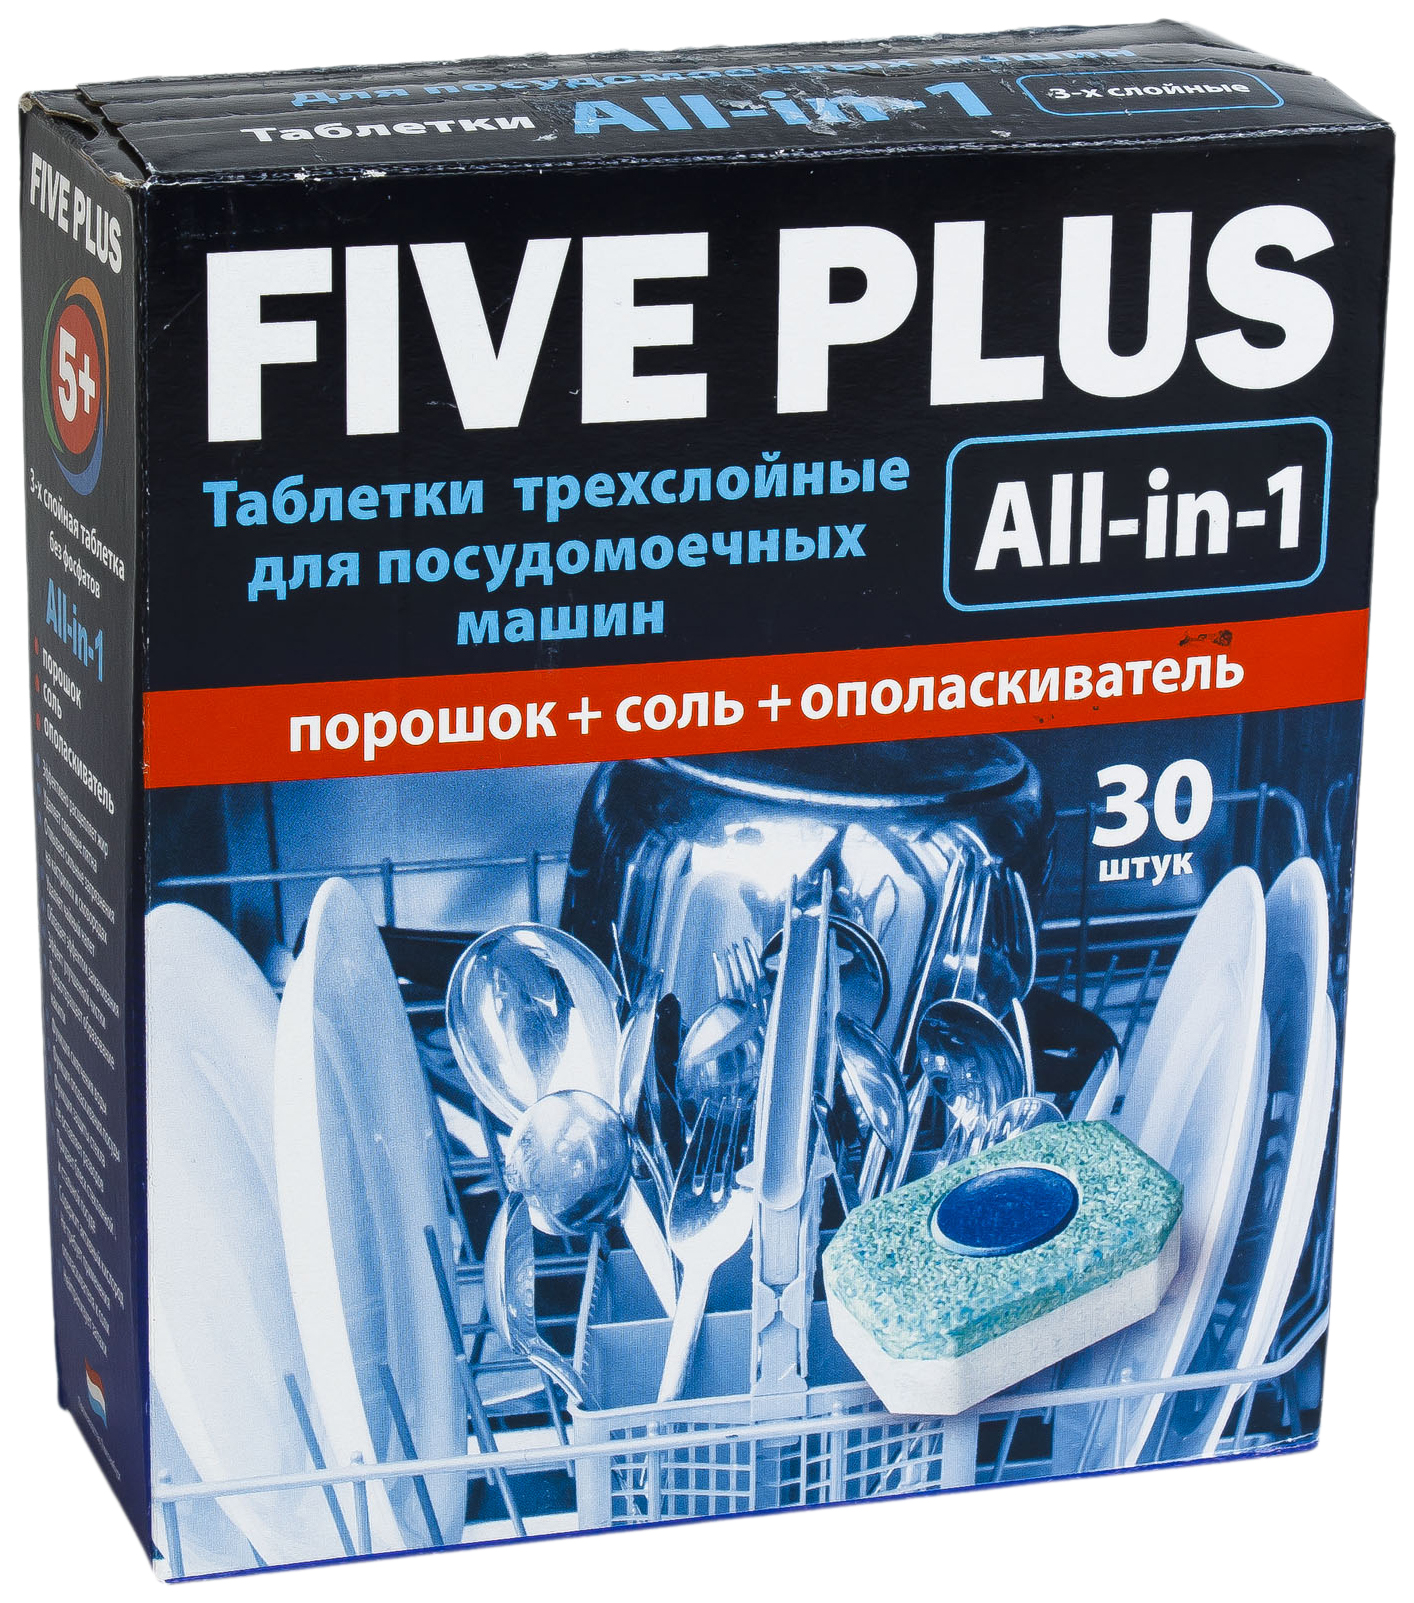 Таблетки для посудомоечной машины Five Plus 30 шт.